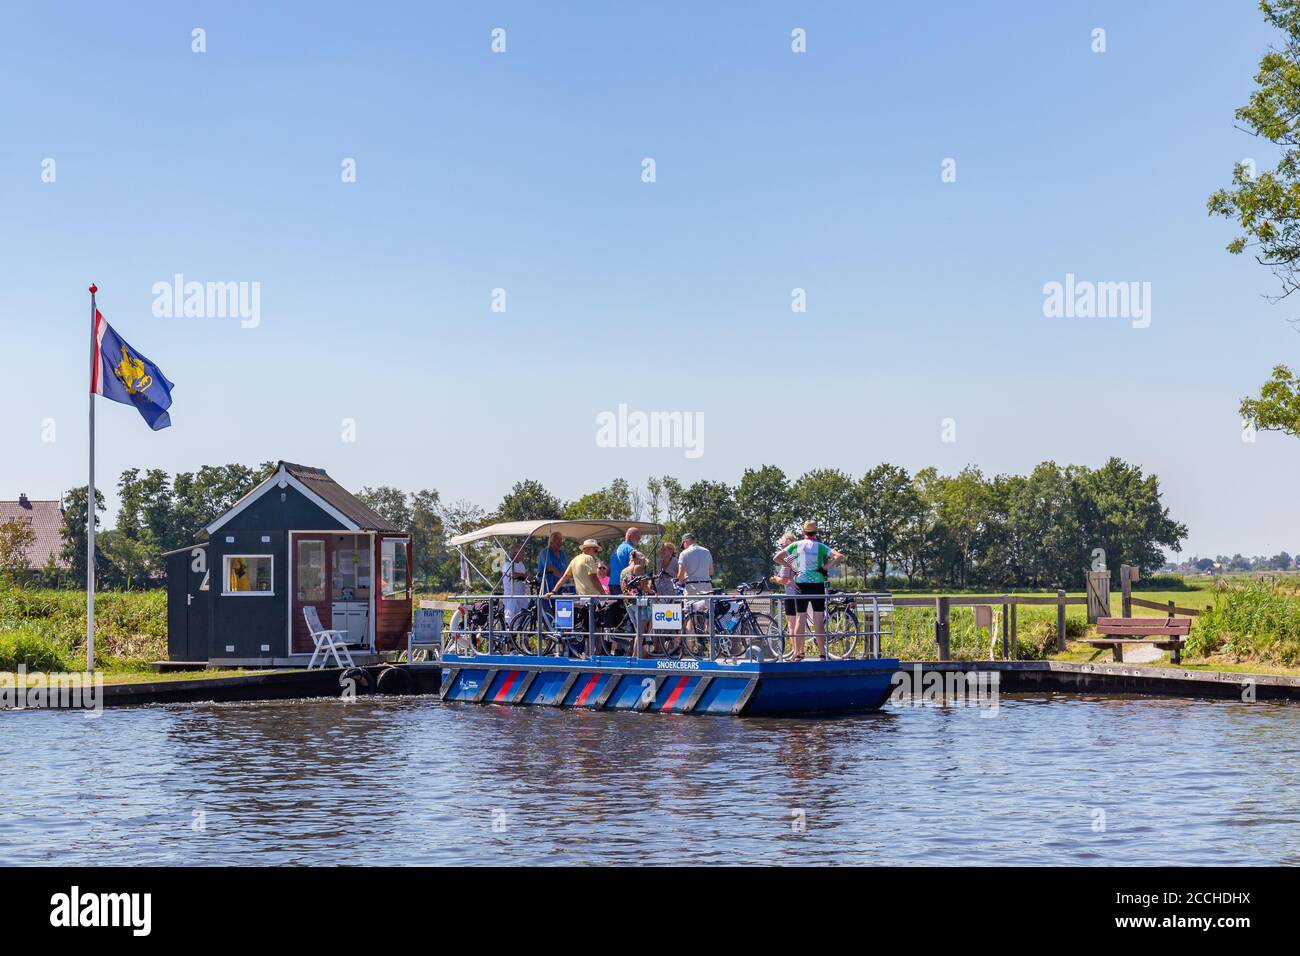 Grou, pays-Bas - 8 août 2020: Ferry avec traversée touristique du port de Grou lors de leur tour à vélo NP ADLE Feanen , Frise, pays-Bas Banque D'Images